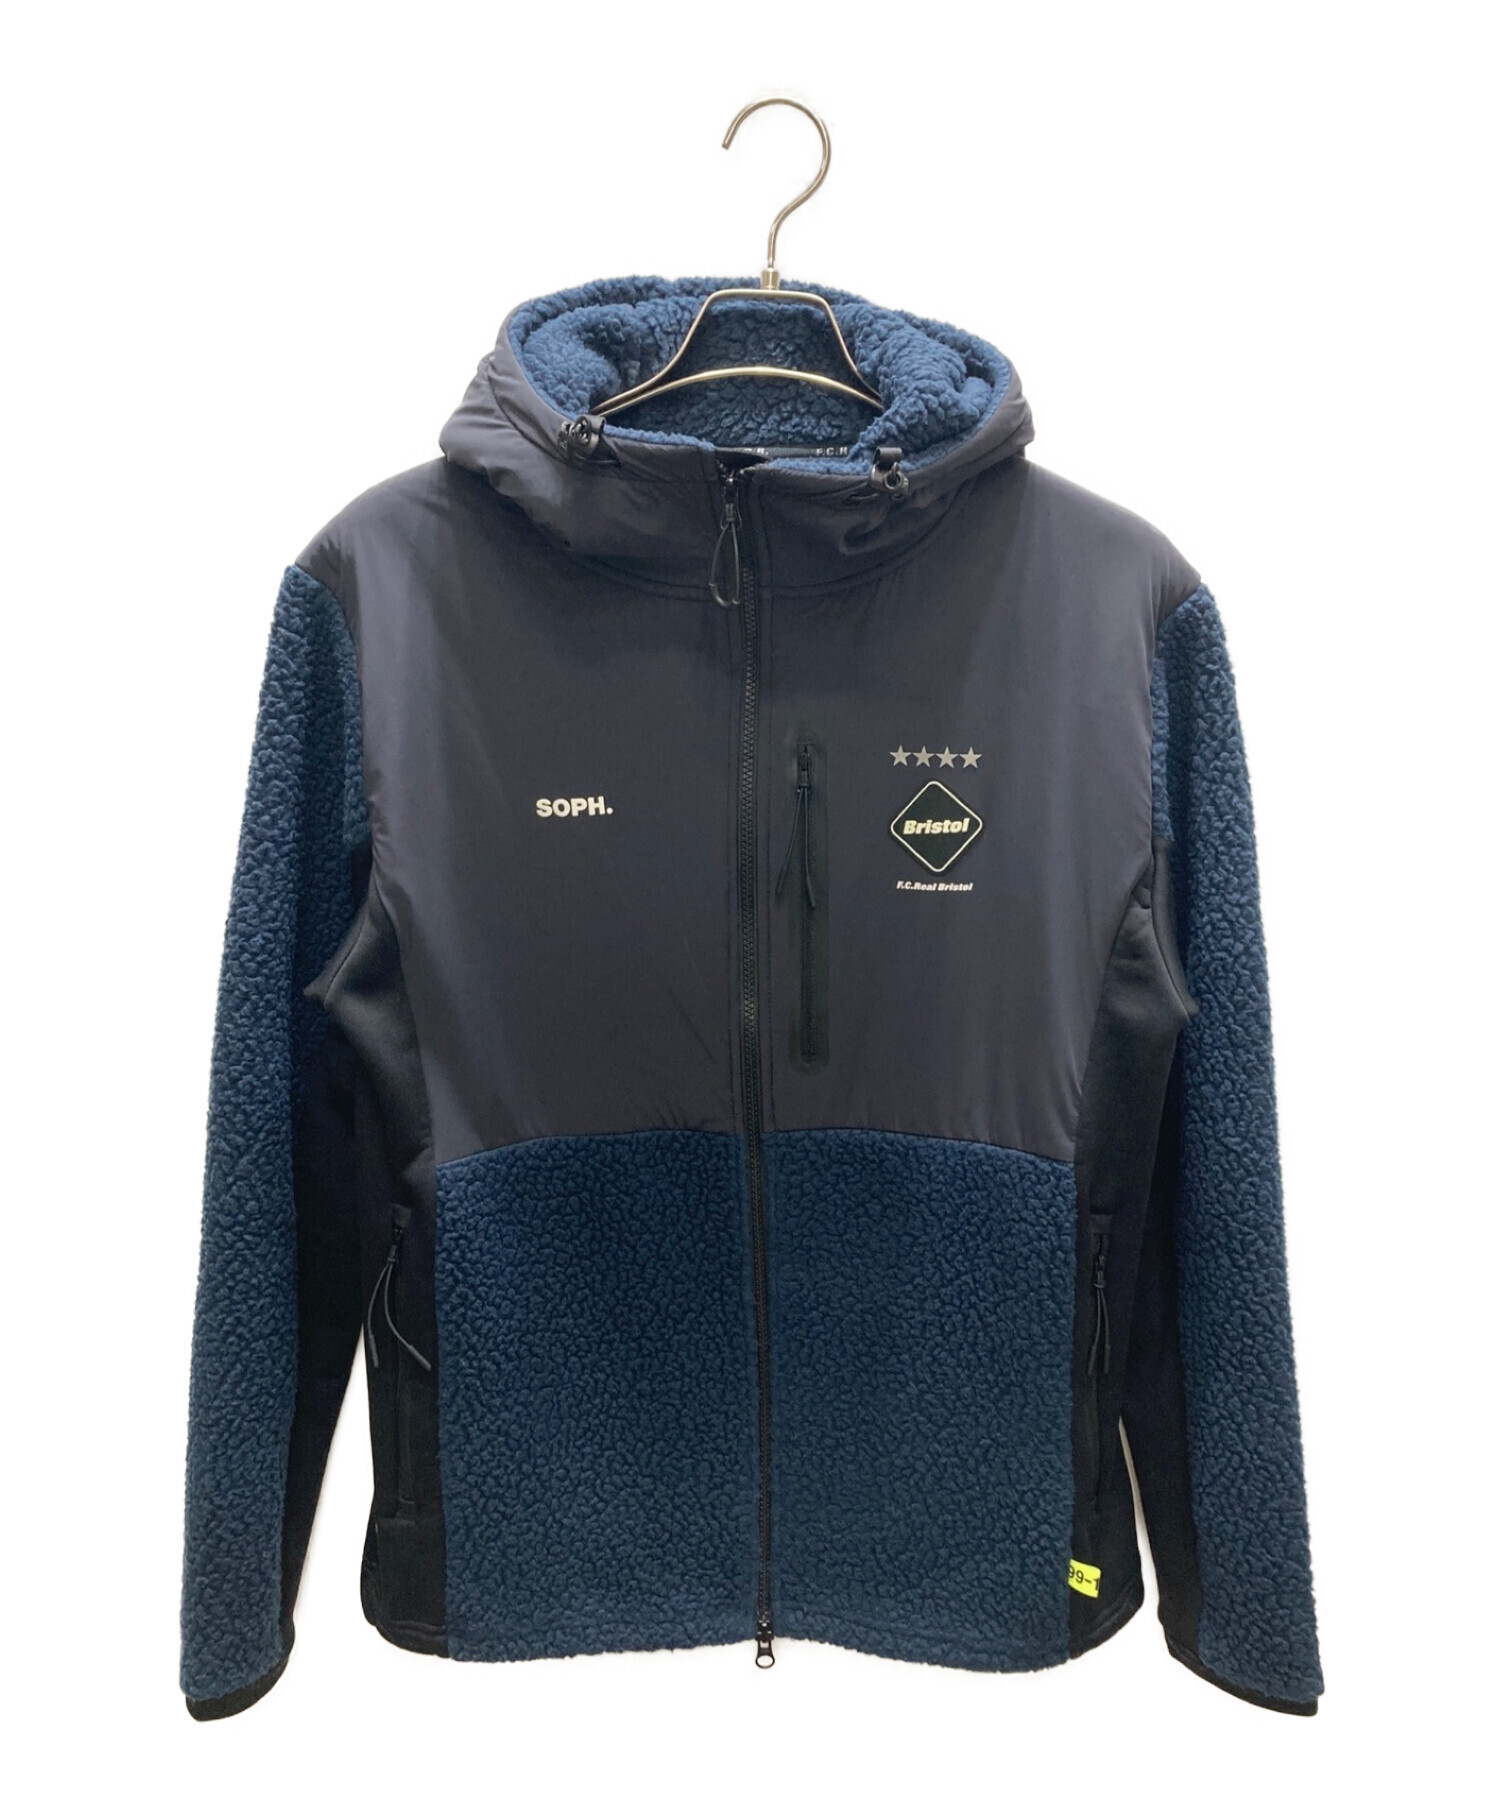 【M】FCRB POLARTEC fleece jacket